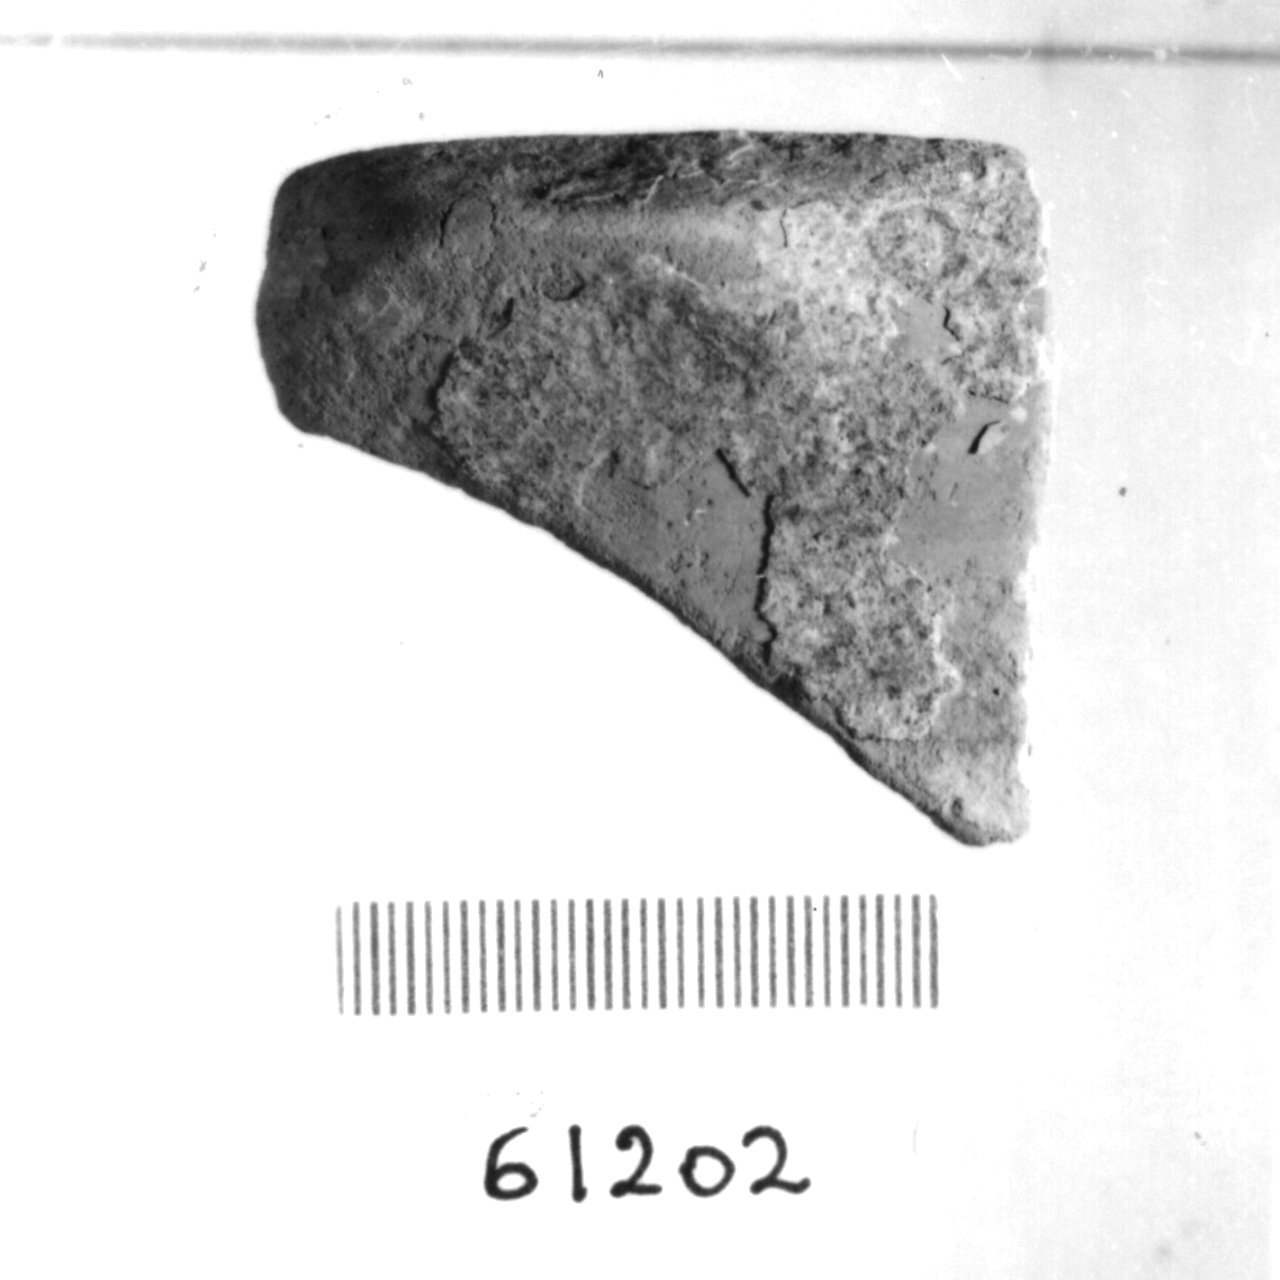 frammento non id (Eneolitico)